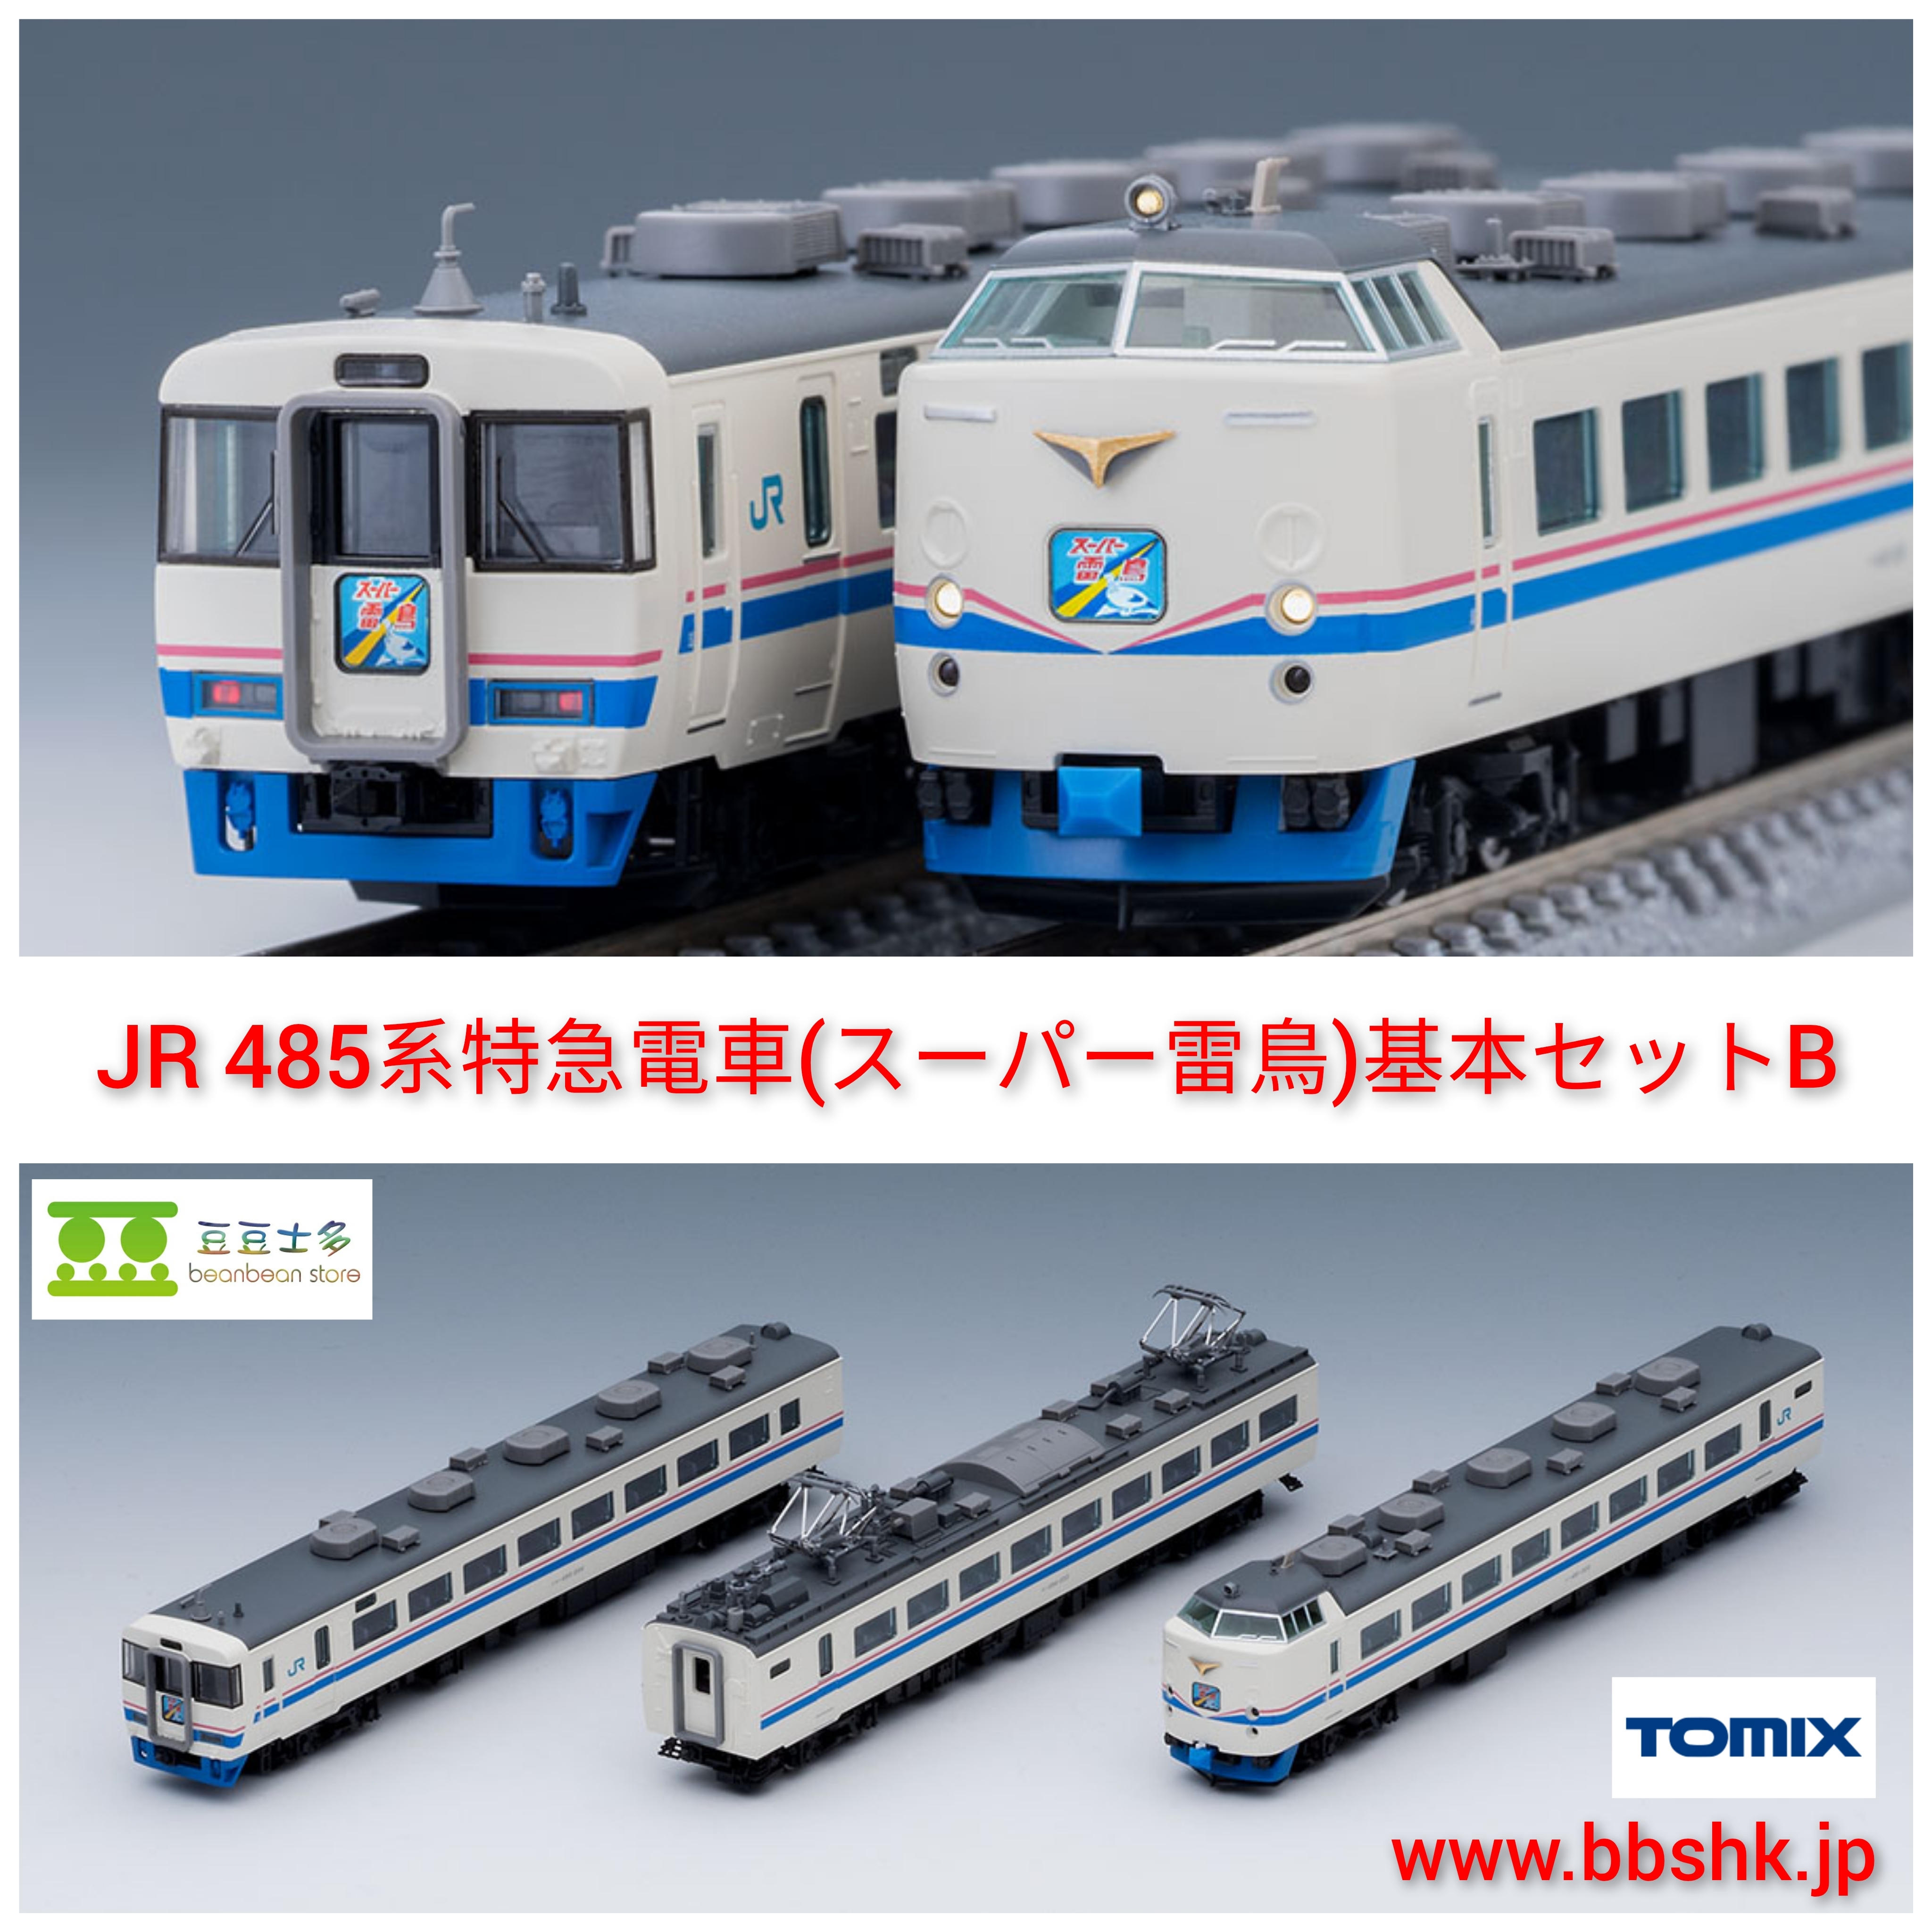 TOMIX 98751 JR 485系 特急電車 (スーパー雷鳥) (基本 B・3 両)